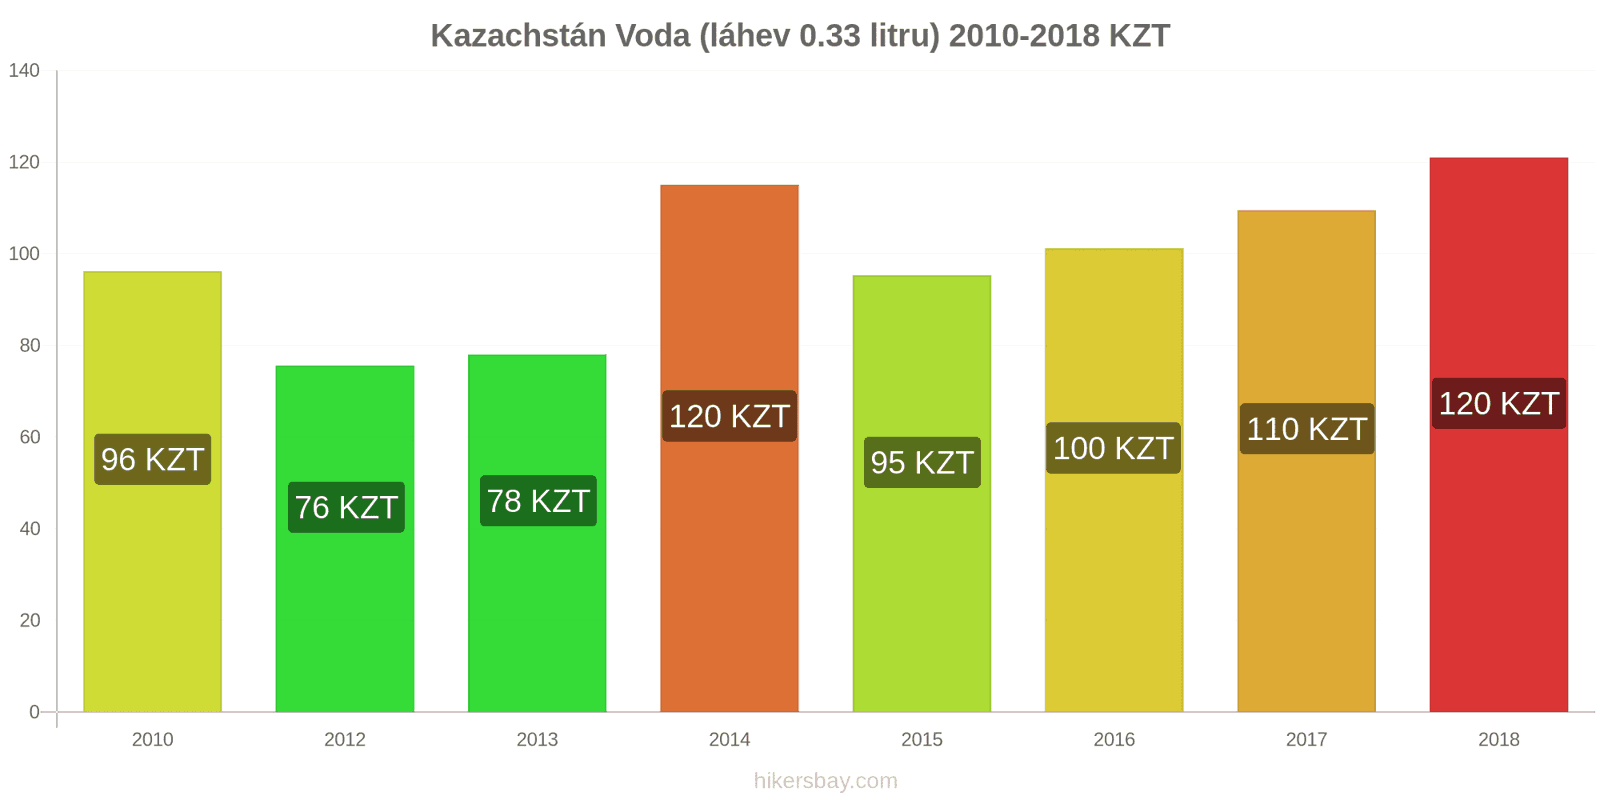 Kazachstán změny cen Voda (láhev 0.33 litru) hikersbay.com